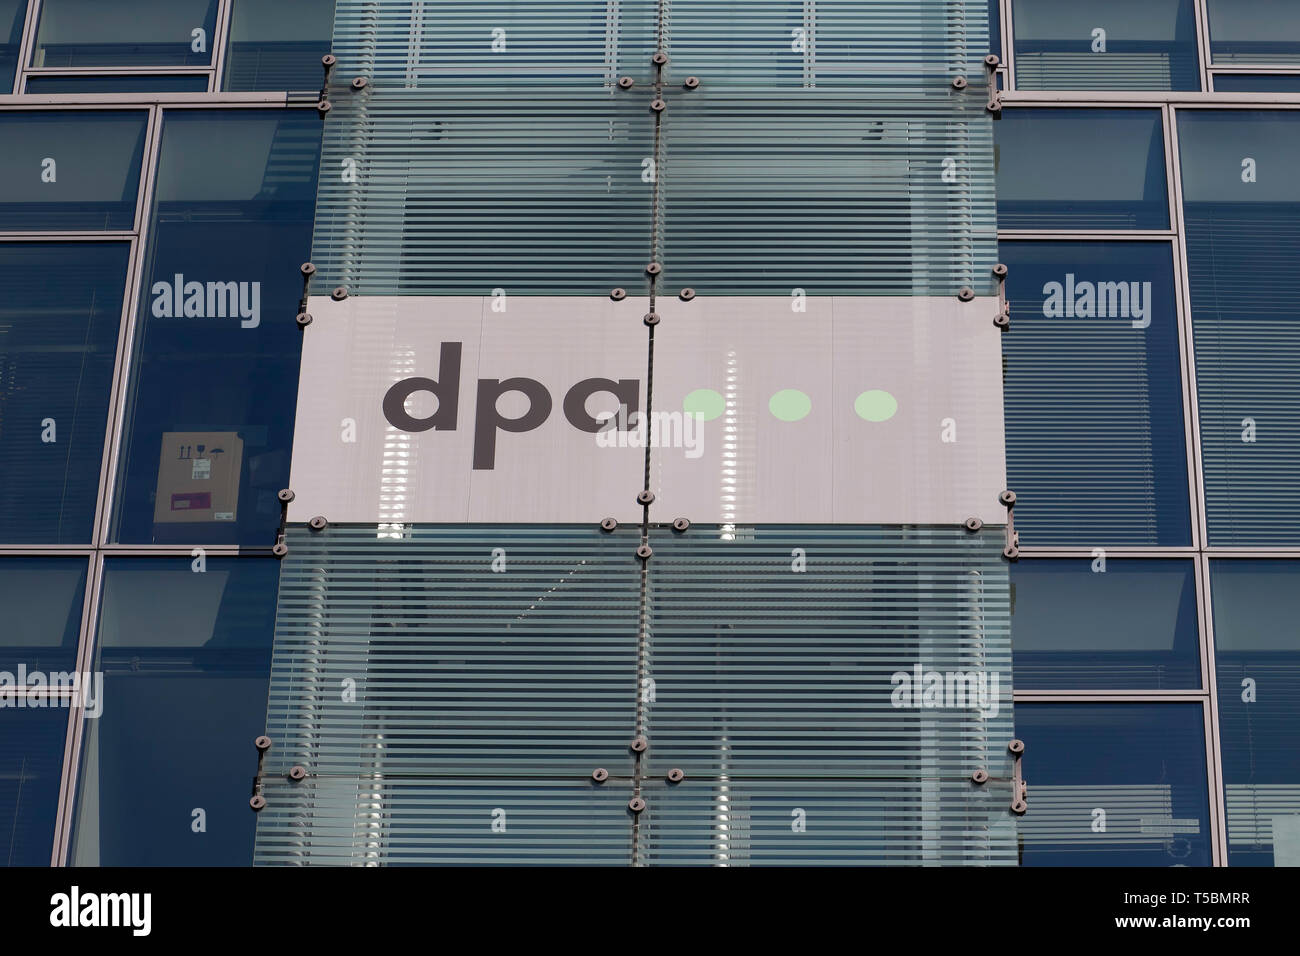 Agence de presse allemande (DPA), le DPA est la plus grande agence de presse en Allemagne Banque D'Images